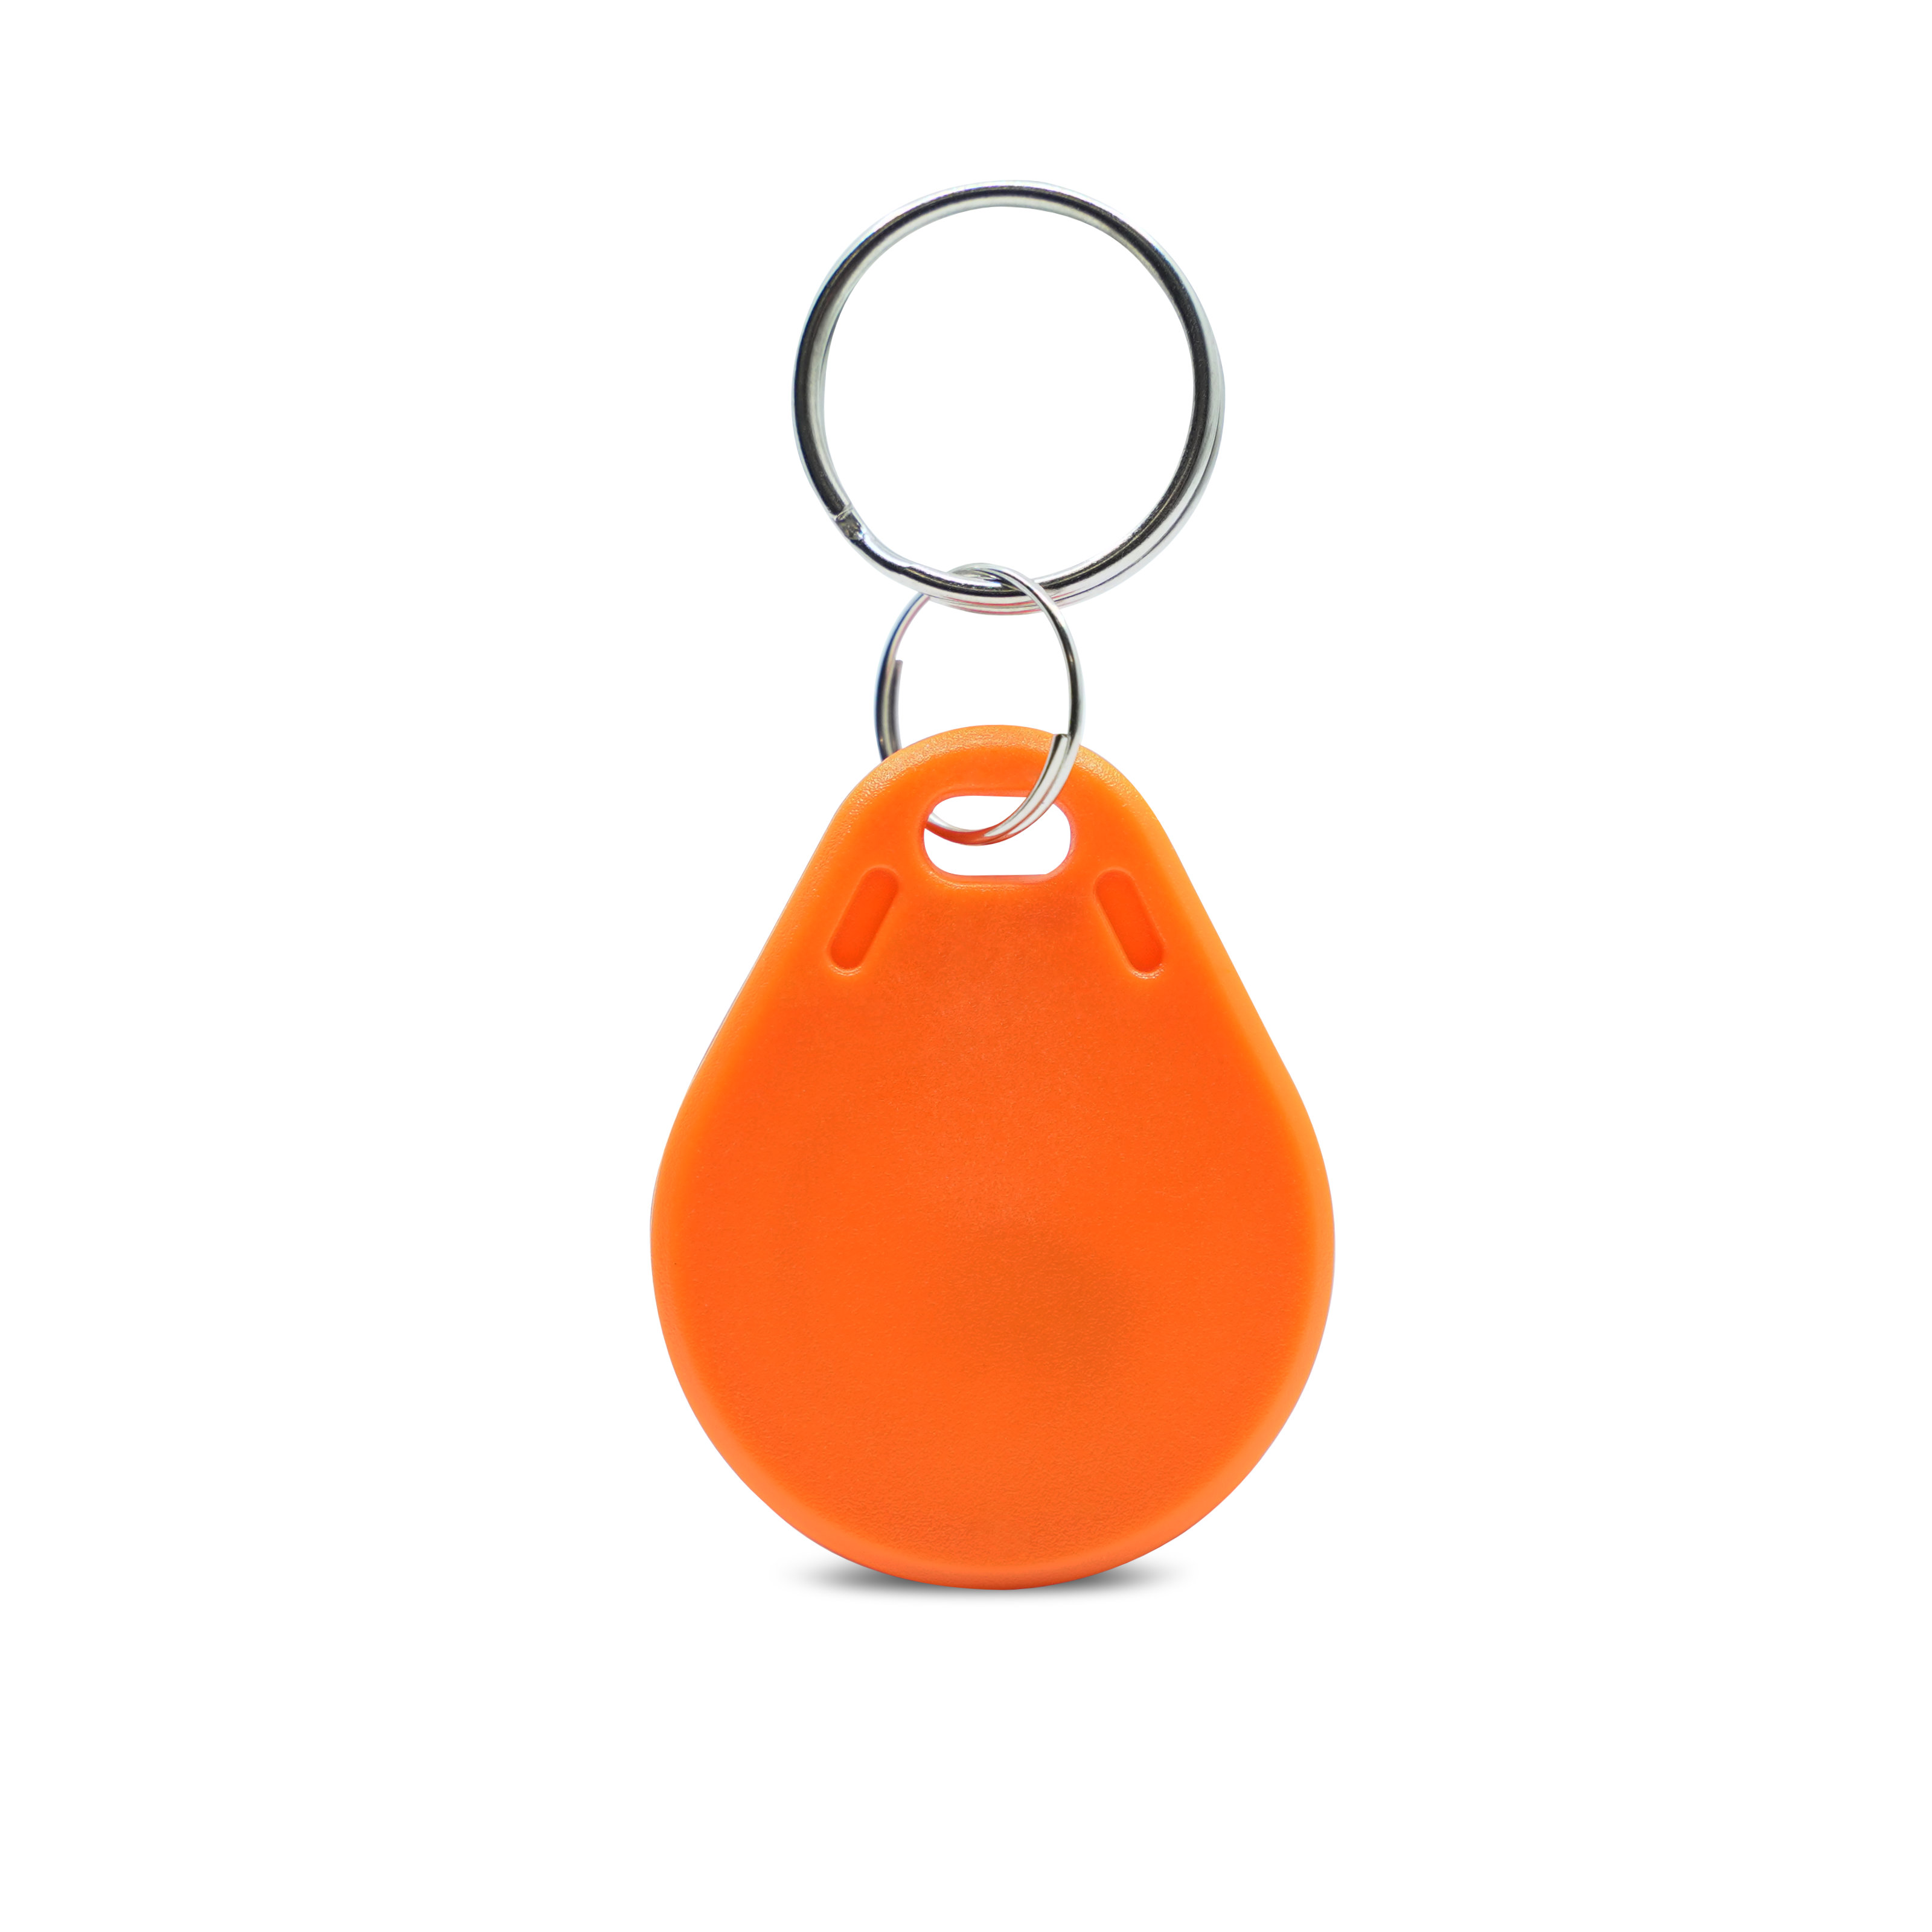 Rückseite des ABS Schlüsselanhängers in orange